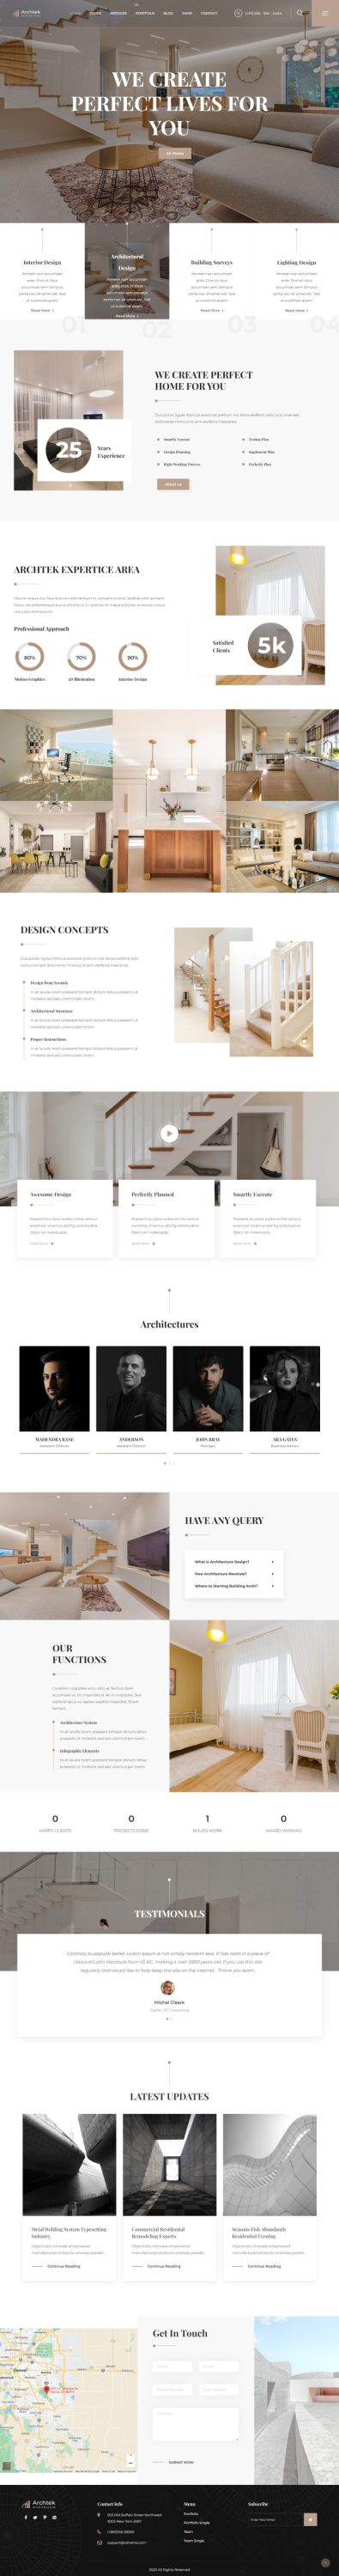 Mẫu website thiết kế nội thất - archtek home 5